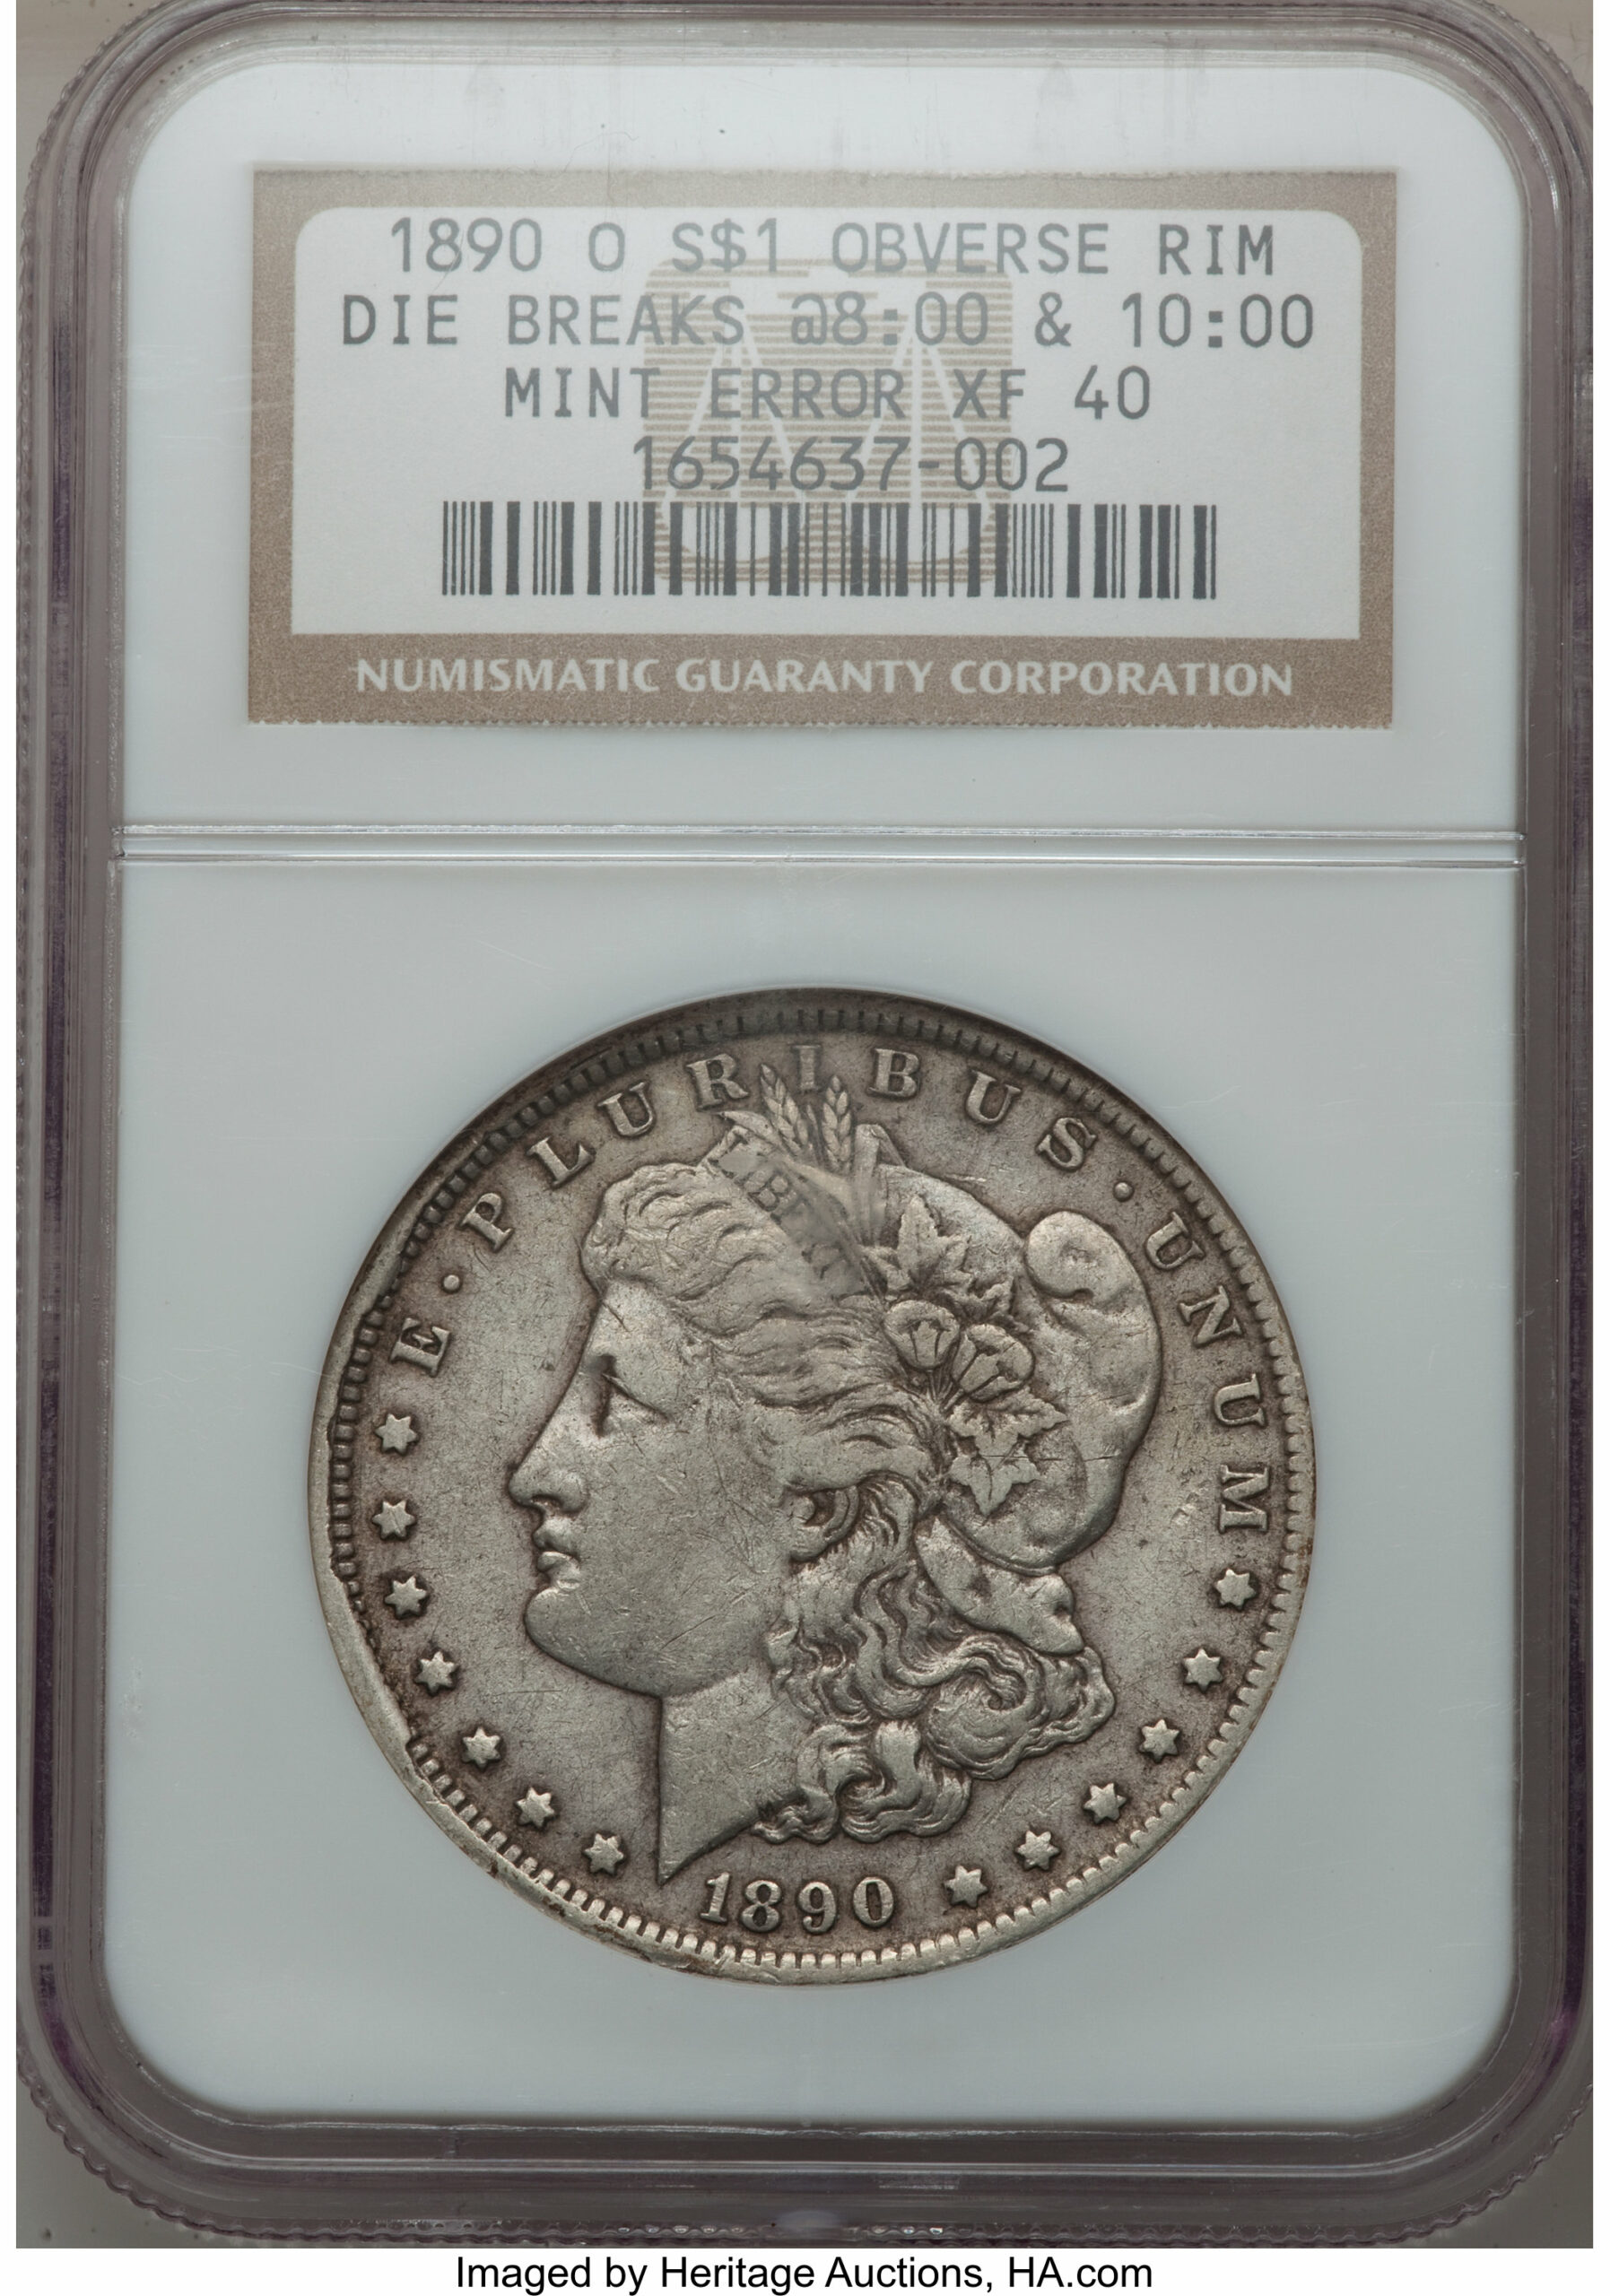 1890 silver dollar Die Breaks